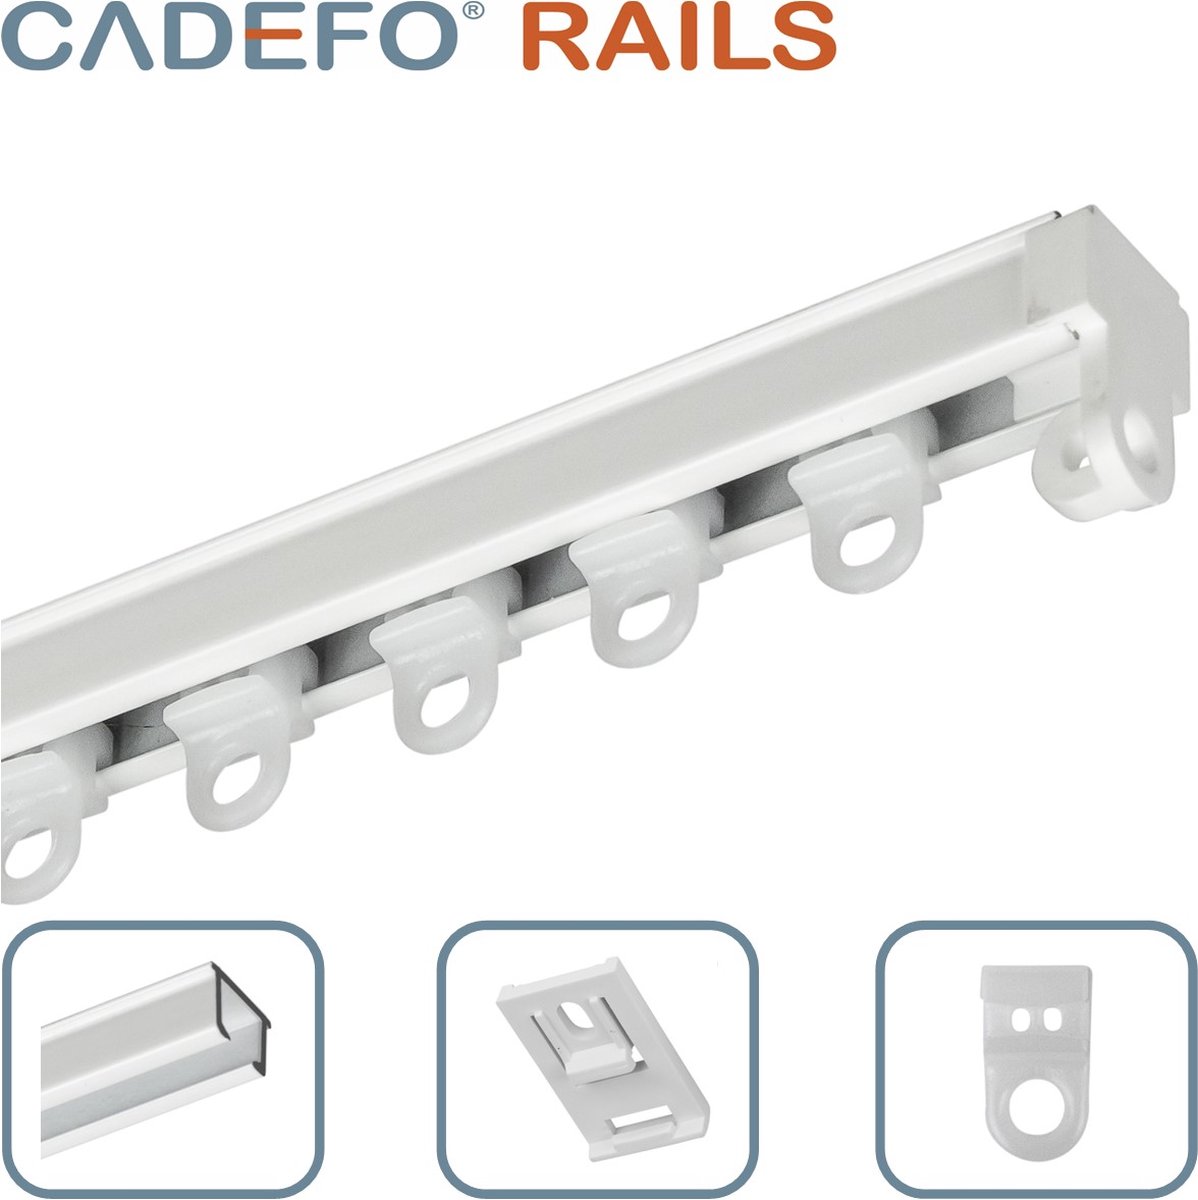 CADEFO RAILS (301 - 350 cm) Gordijnrails - Compleet op maat! - UIT 1 STUK - Leverbaar tot 6 meter - Plafondbevestiging - Lengte 326 cm